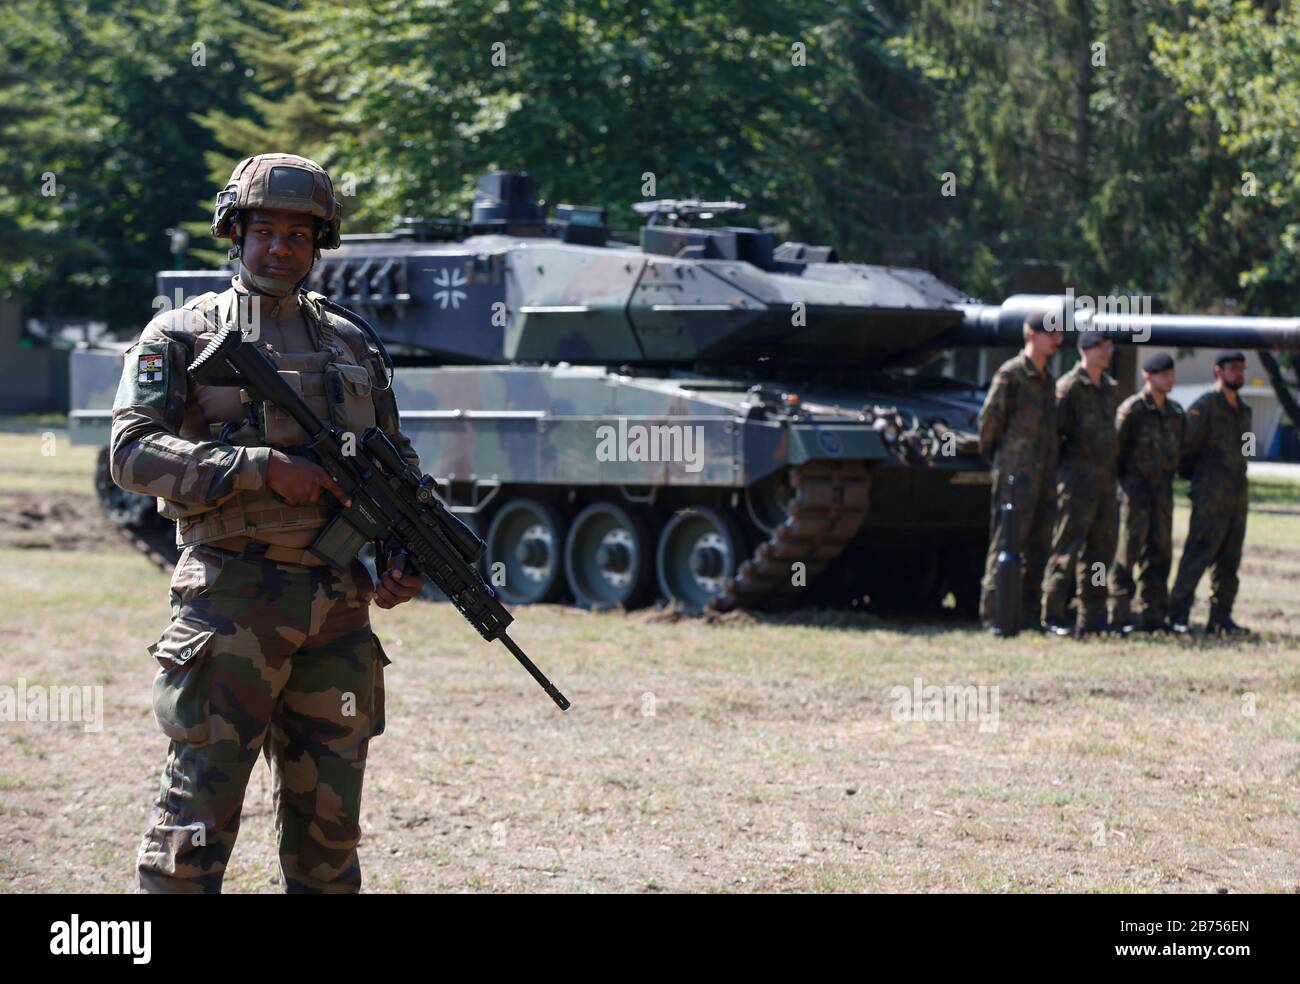 Un soldat français du 153 régiment d'infanterie de Colmar se tient devant un char de combat principal de la Bundeswehr Leopard 2A6 lors d'une manifestation dans la caserne Julius Leber à Berlin. [traduction automatique] Banque D'Images